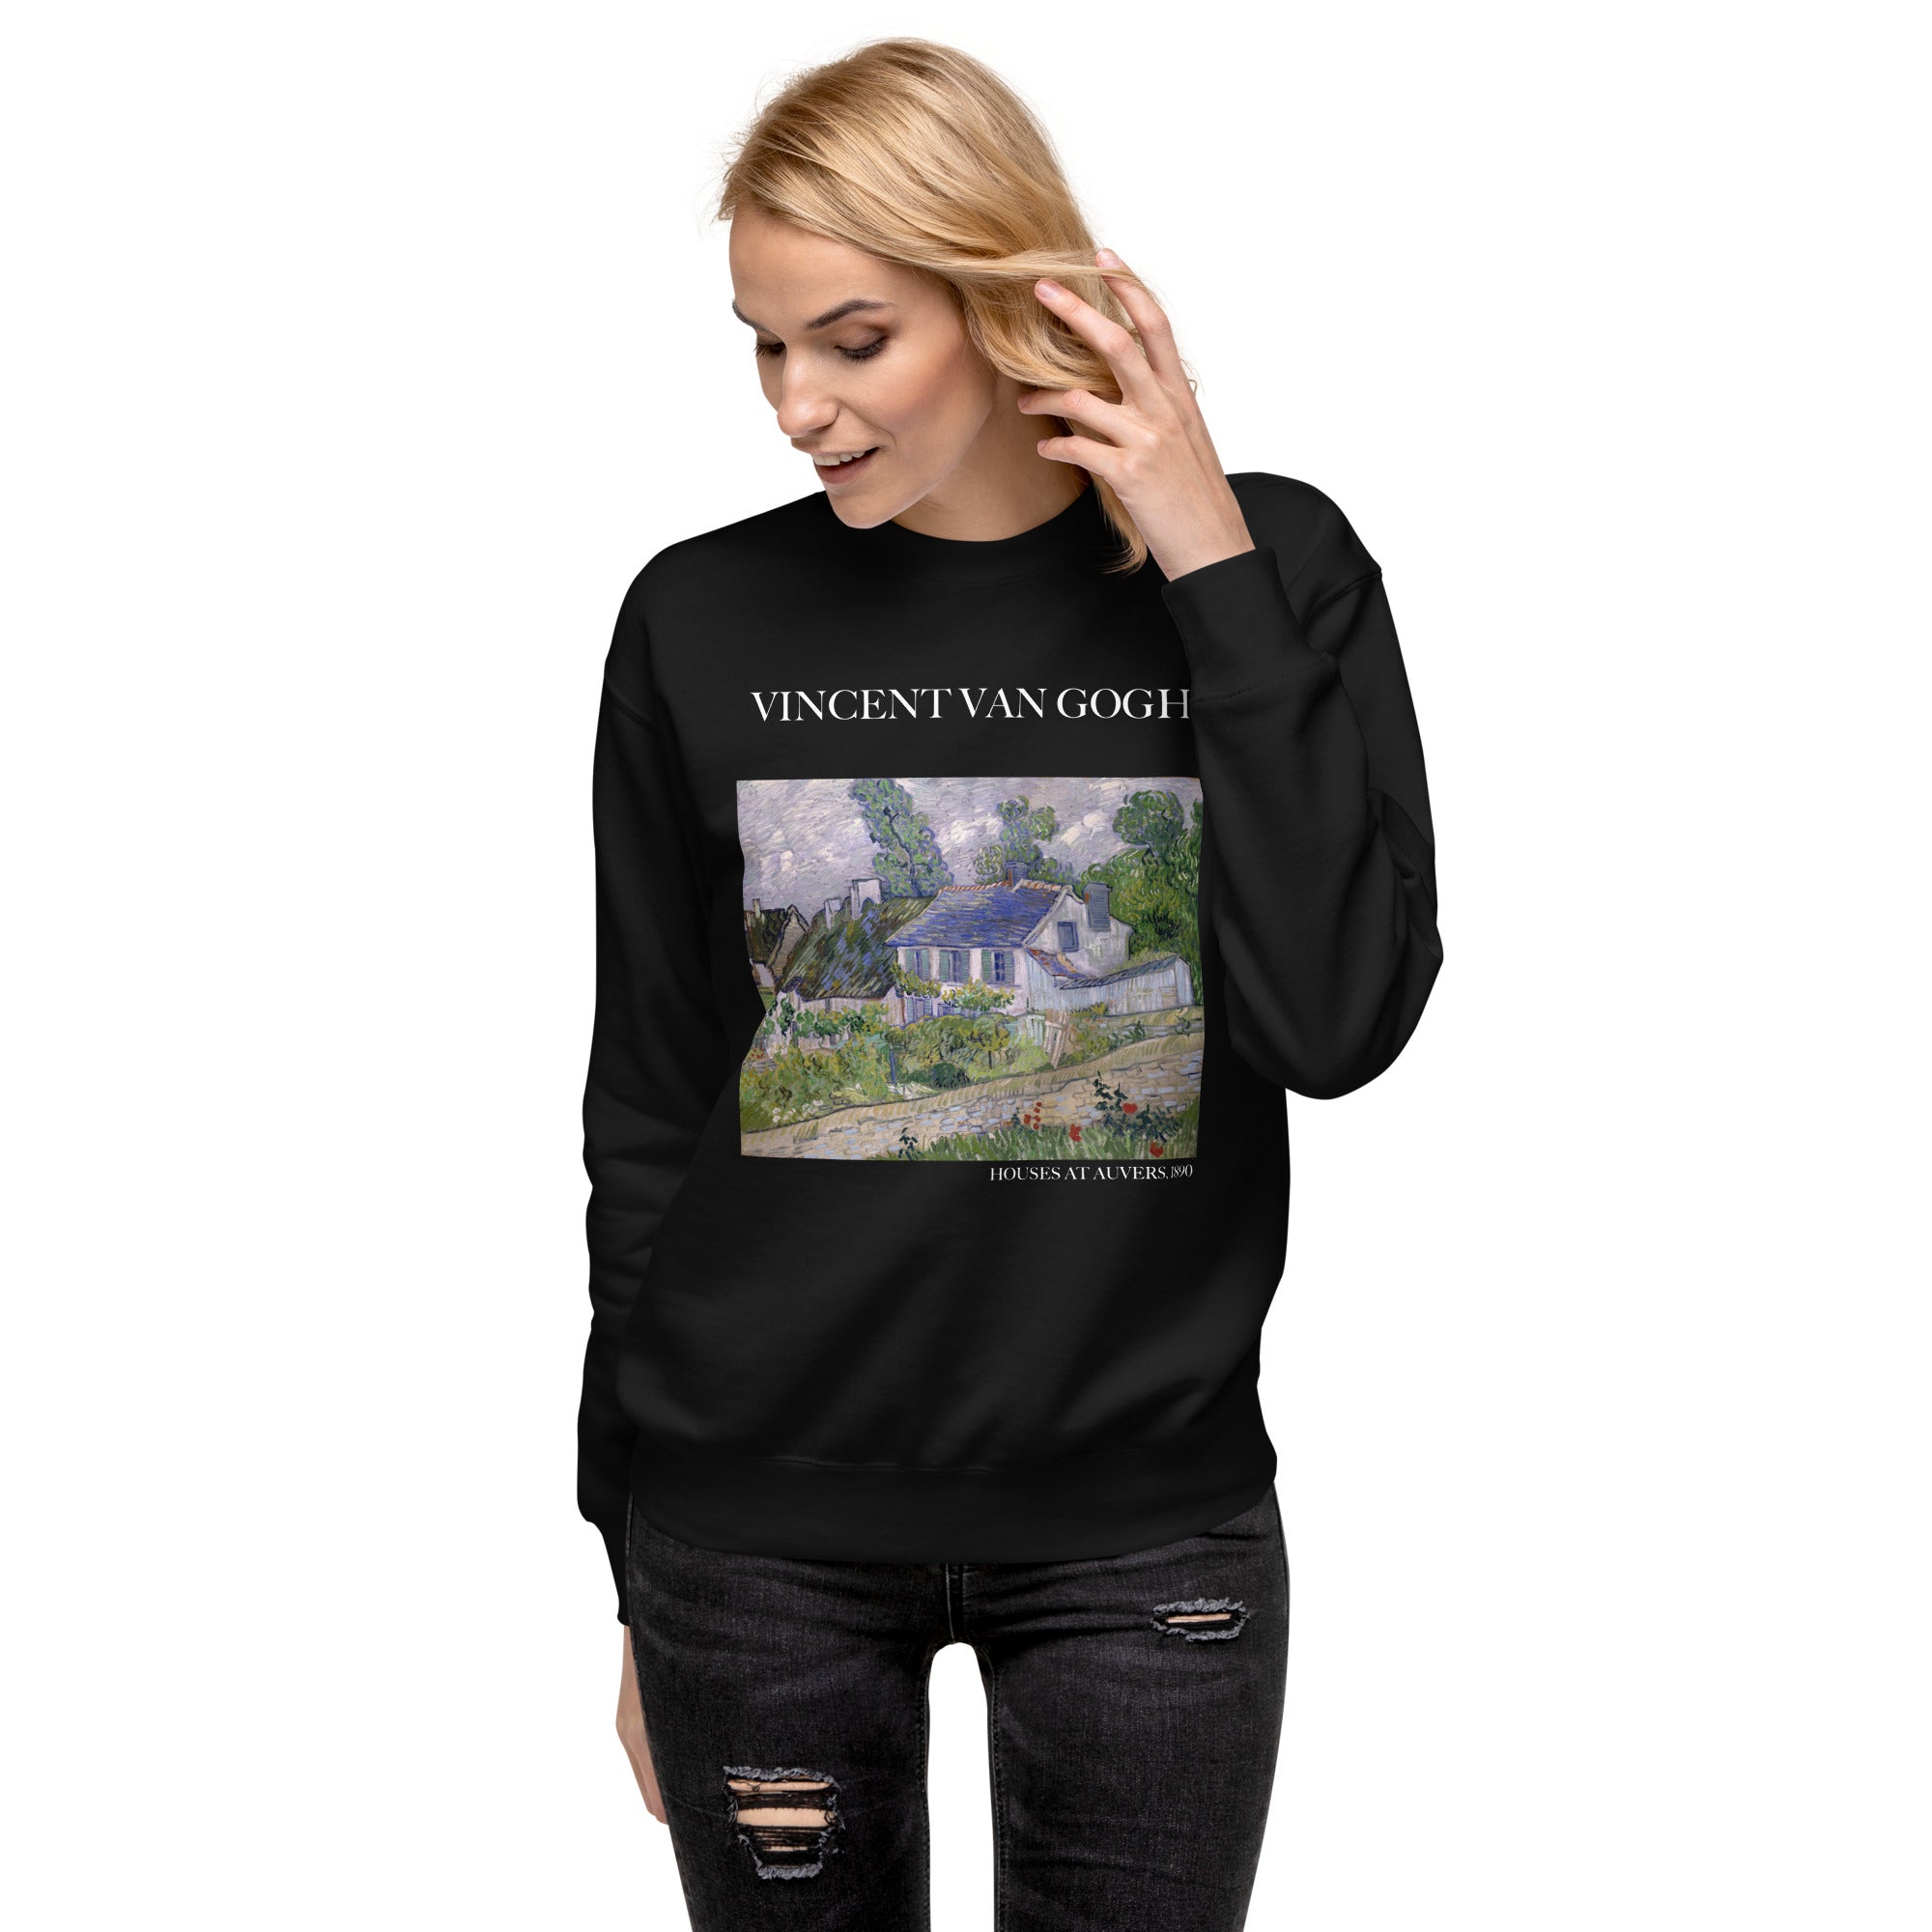 Vincent van Gogh 'Houses at Auvers' Famous Painting Sweatshirt | Unisex Premium Sweatshirt